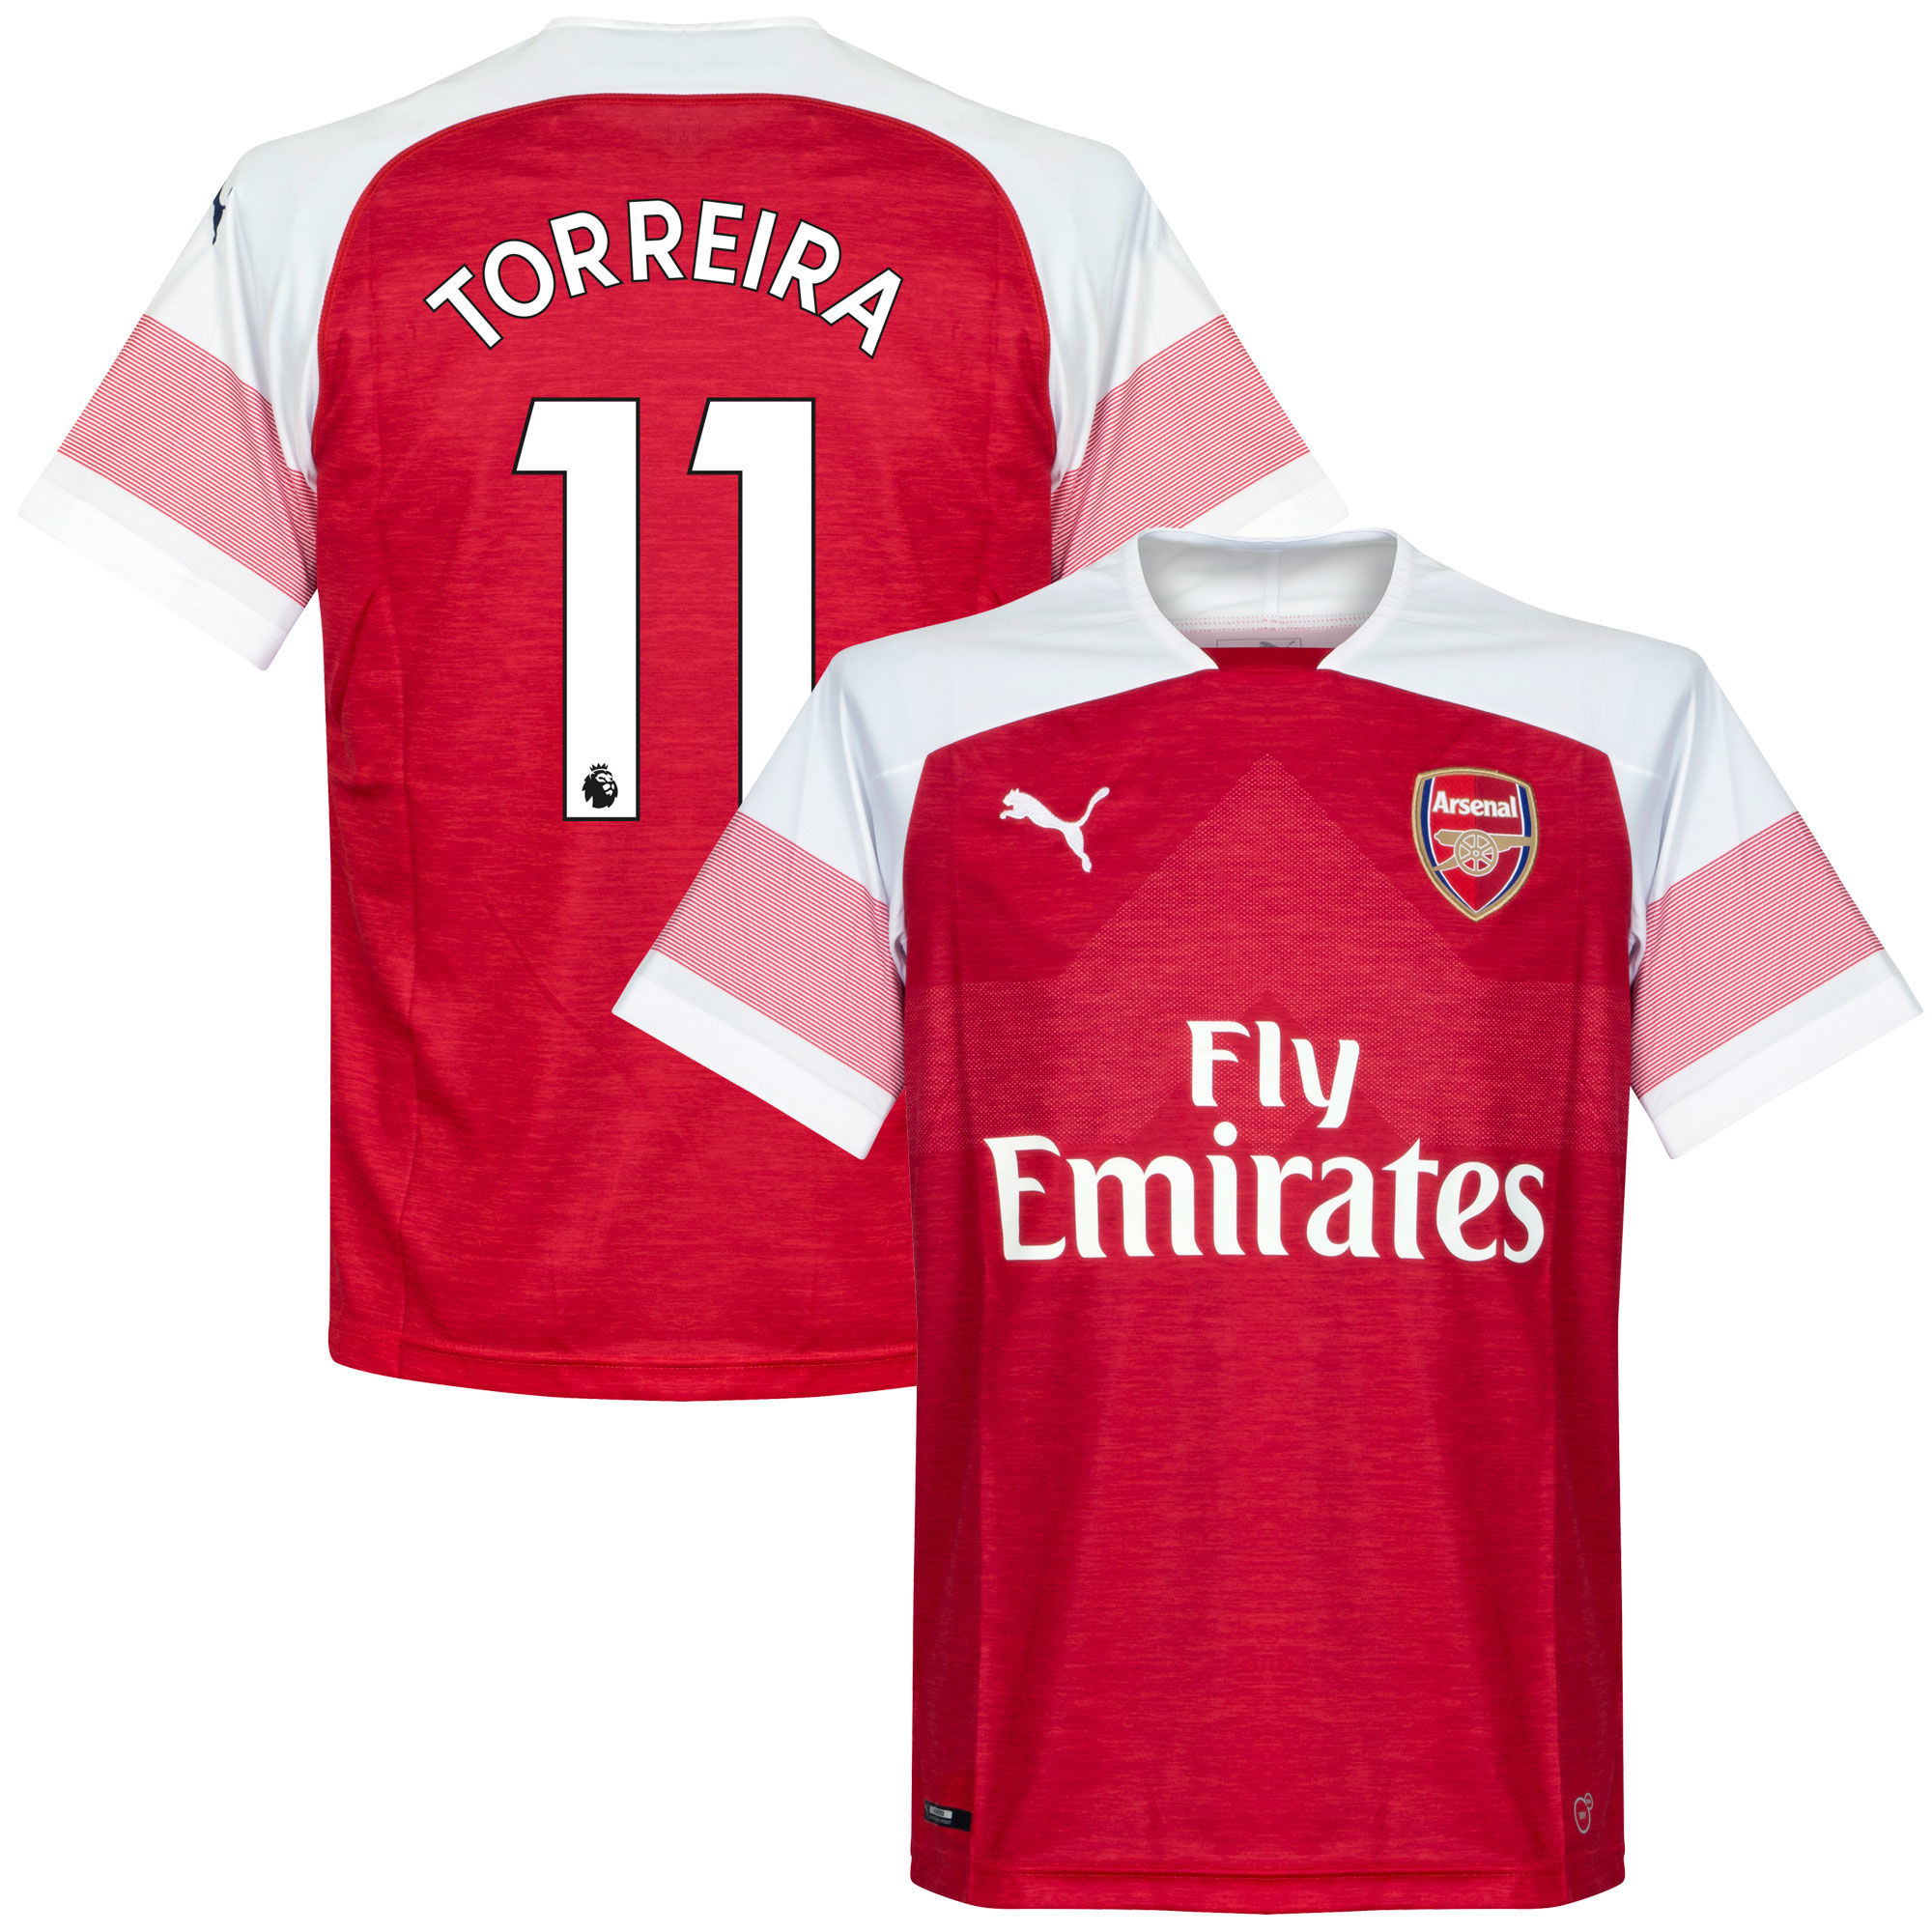 Arsenal - Dres fotbalový - Lucas Torreira, sezóna 2018/2019, domácí, číslo 11, červený